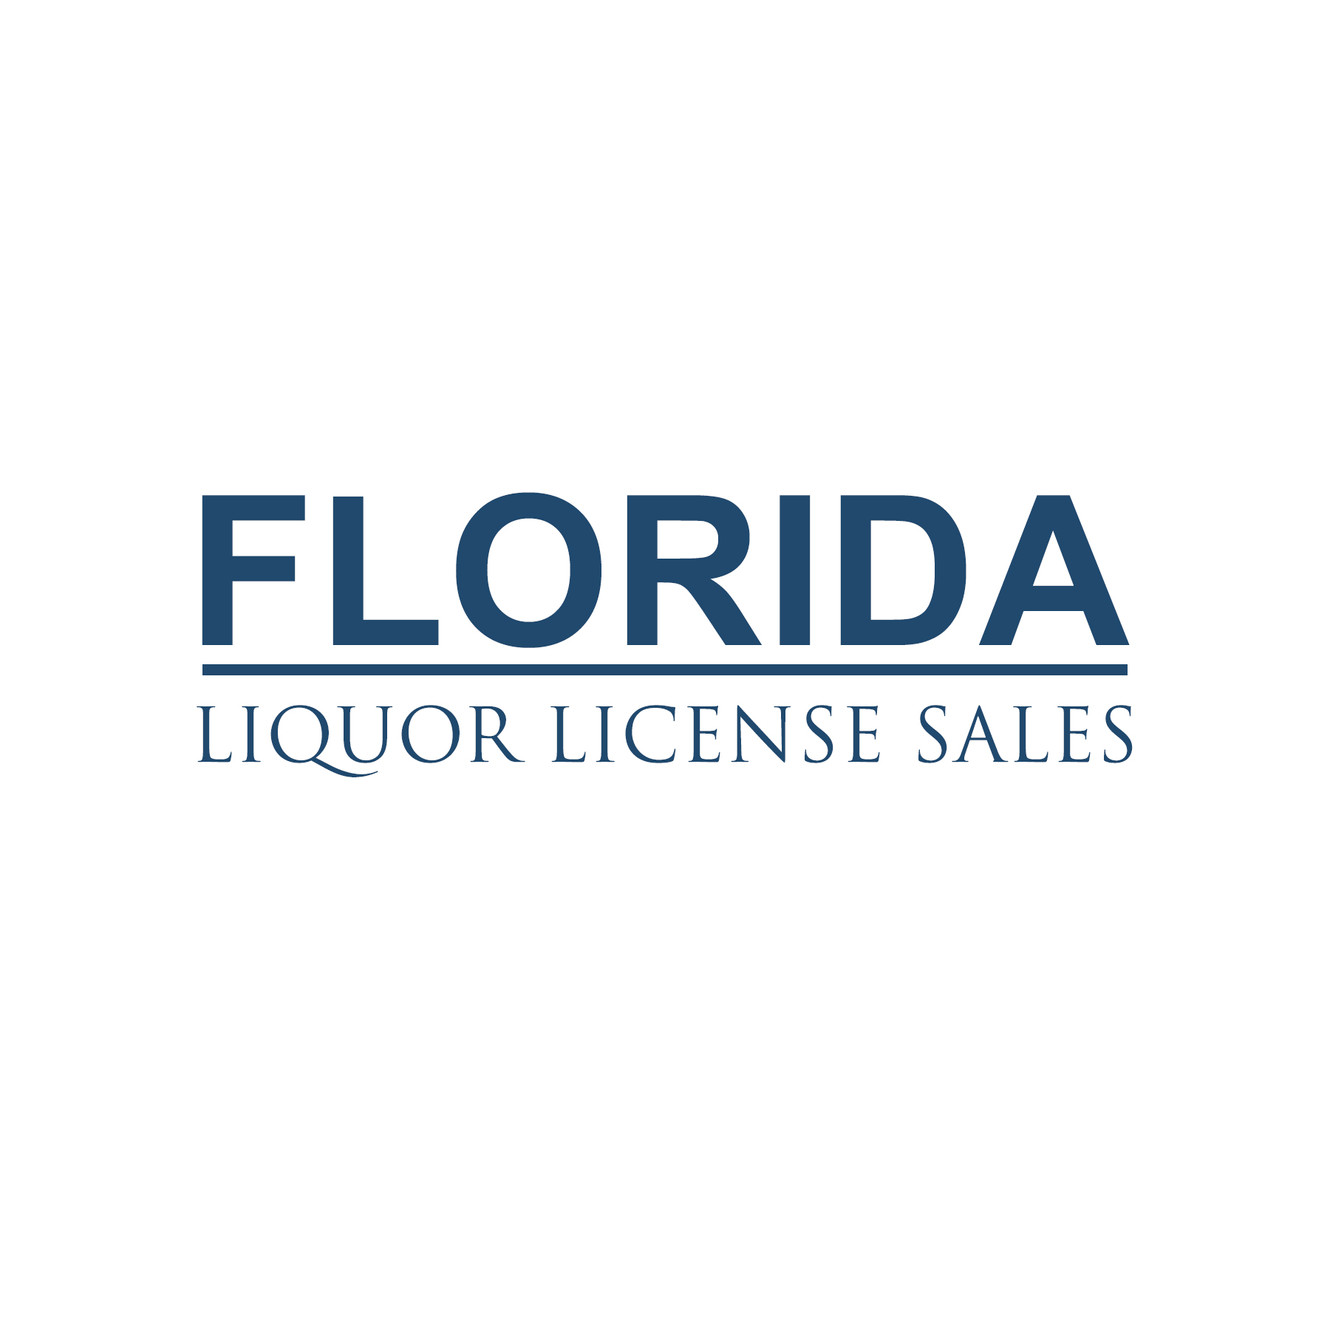 How to Get a Liquor License